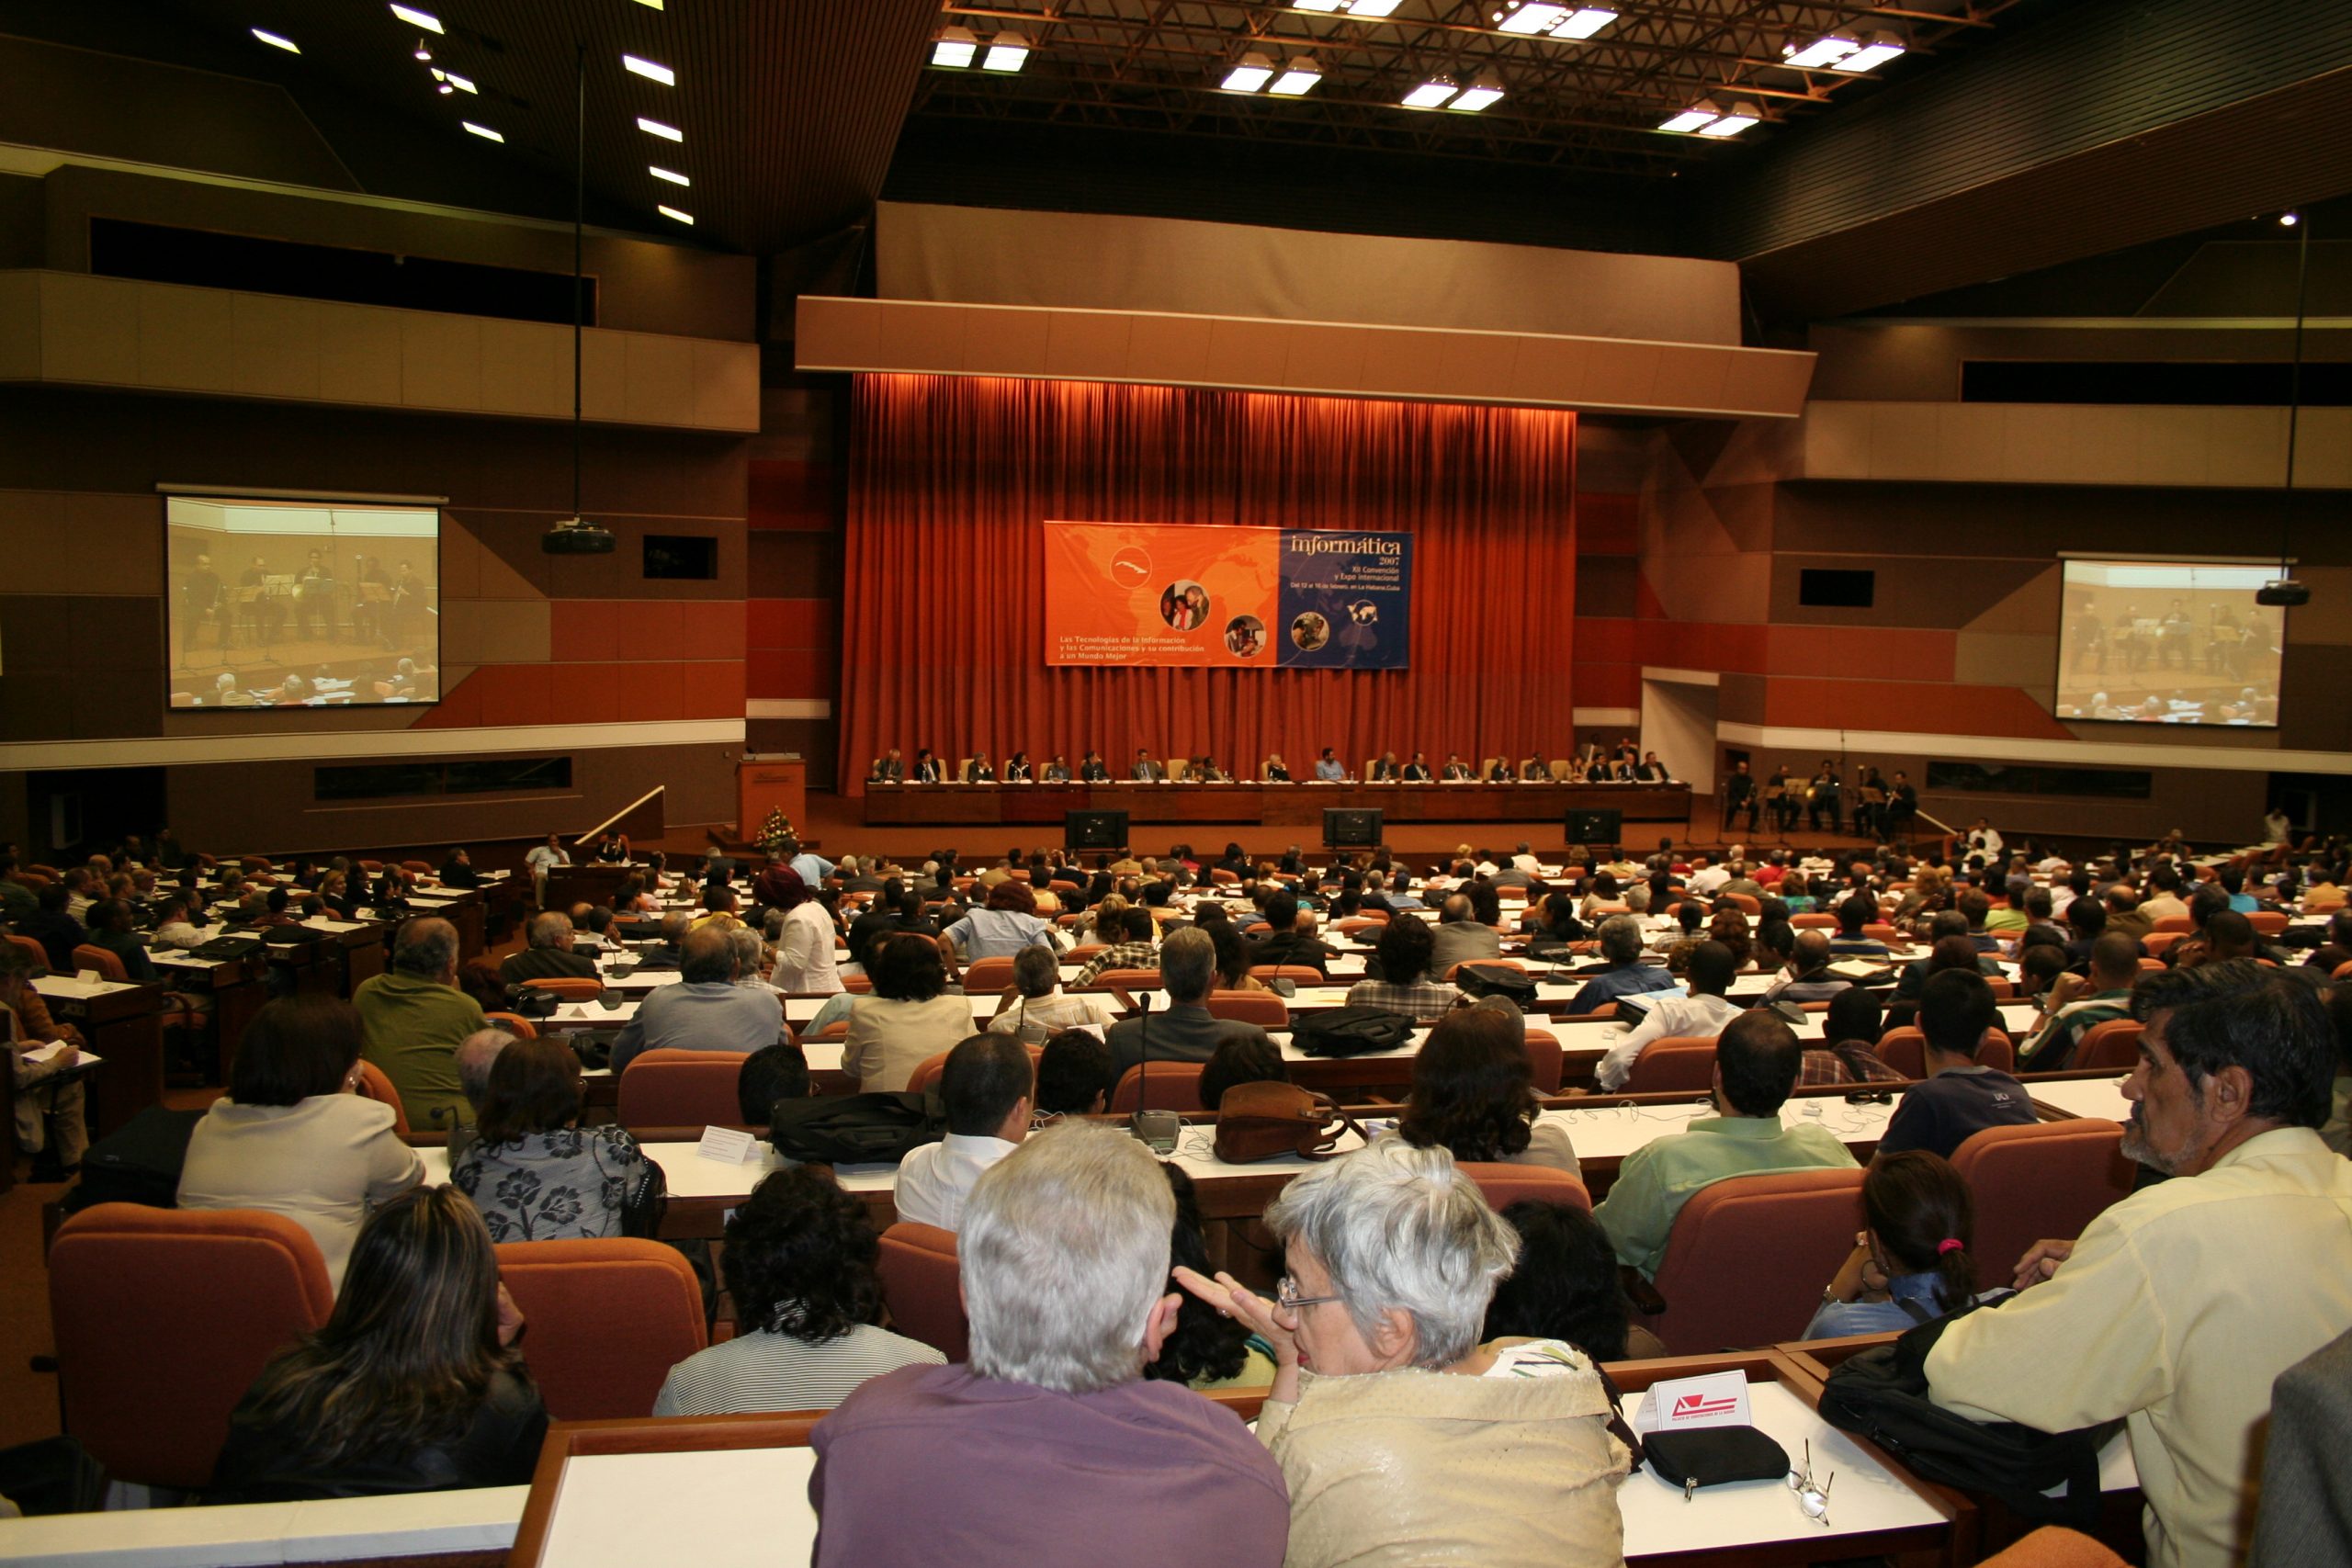 Acto inaugural de Informática 2007